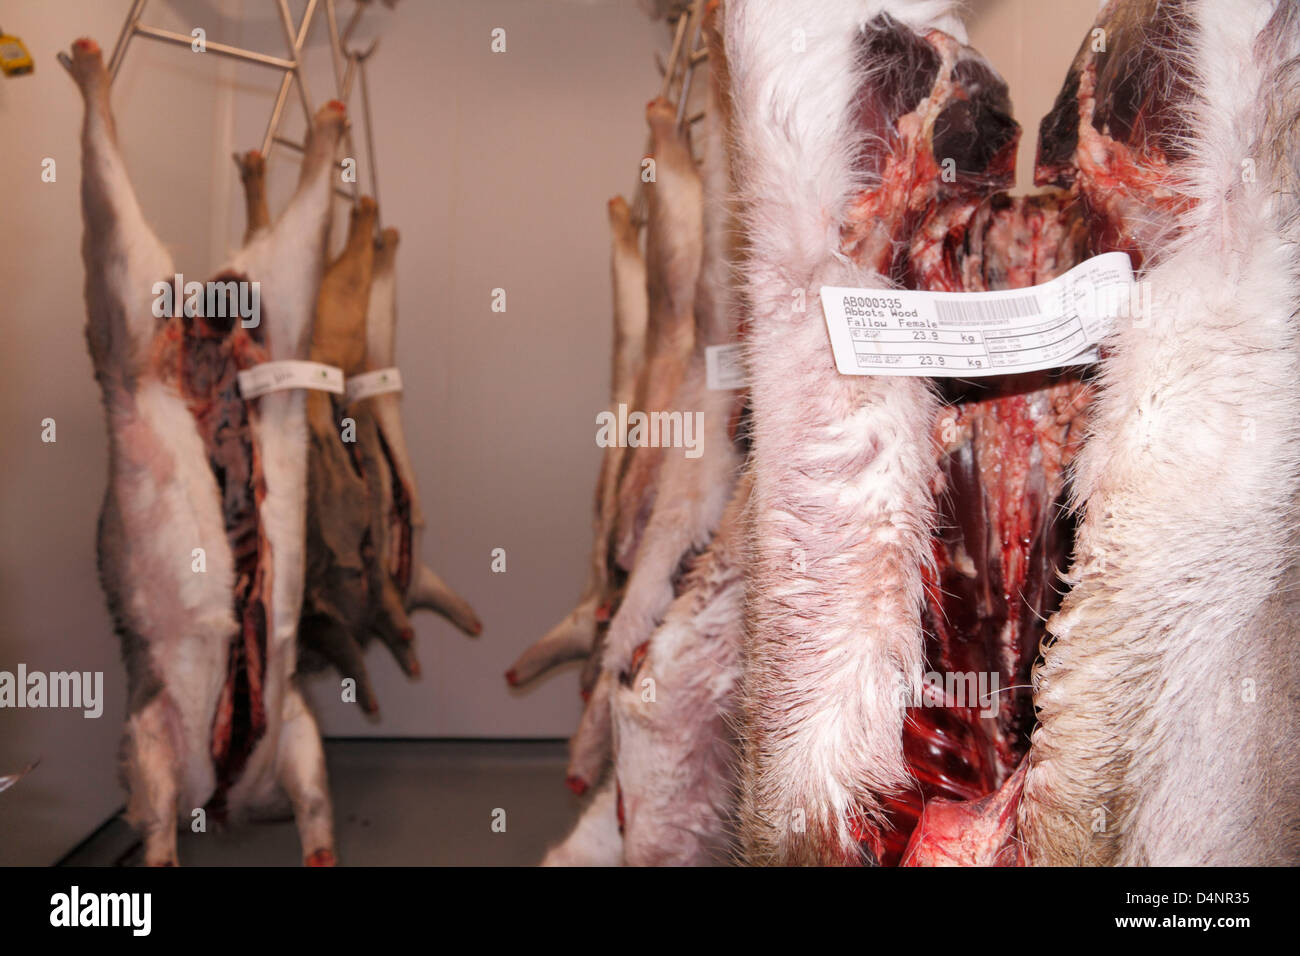 Sacrificados en barbecho, el corzo y el ciervo muntjac cadáveres colgados en una unidad de almacenamiento en frío despensa de ciervo en el sudeste de Inglaterra, Reino Unido. Foto de stock